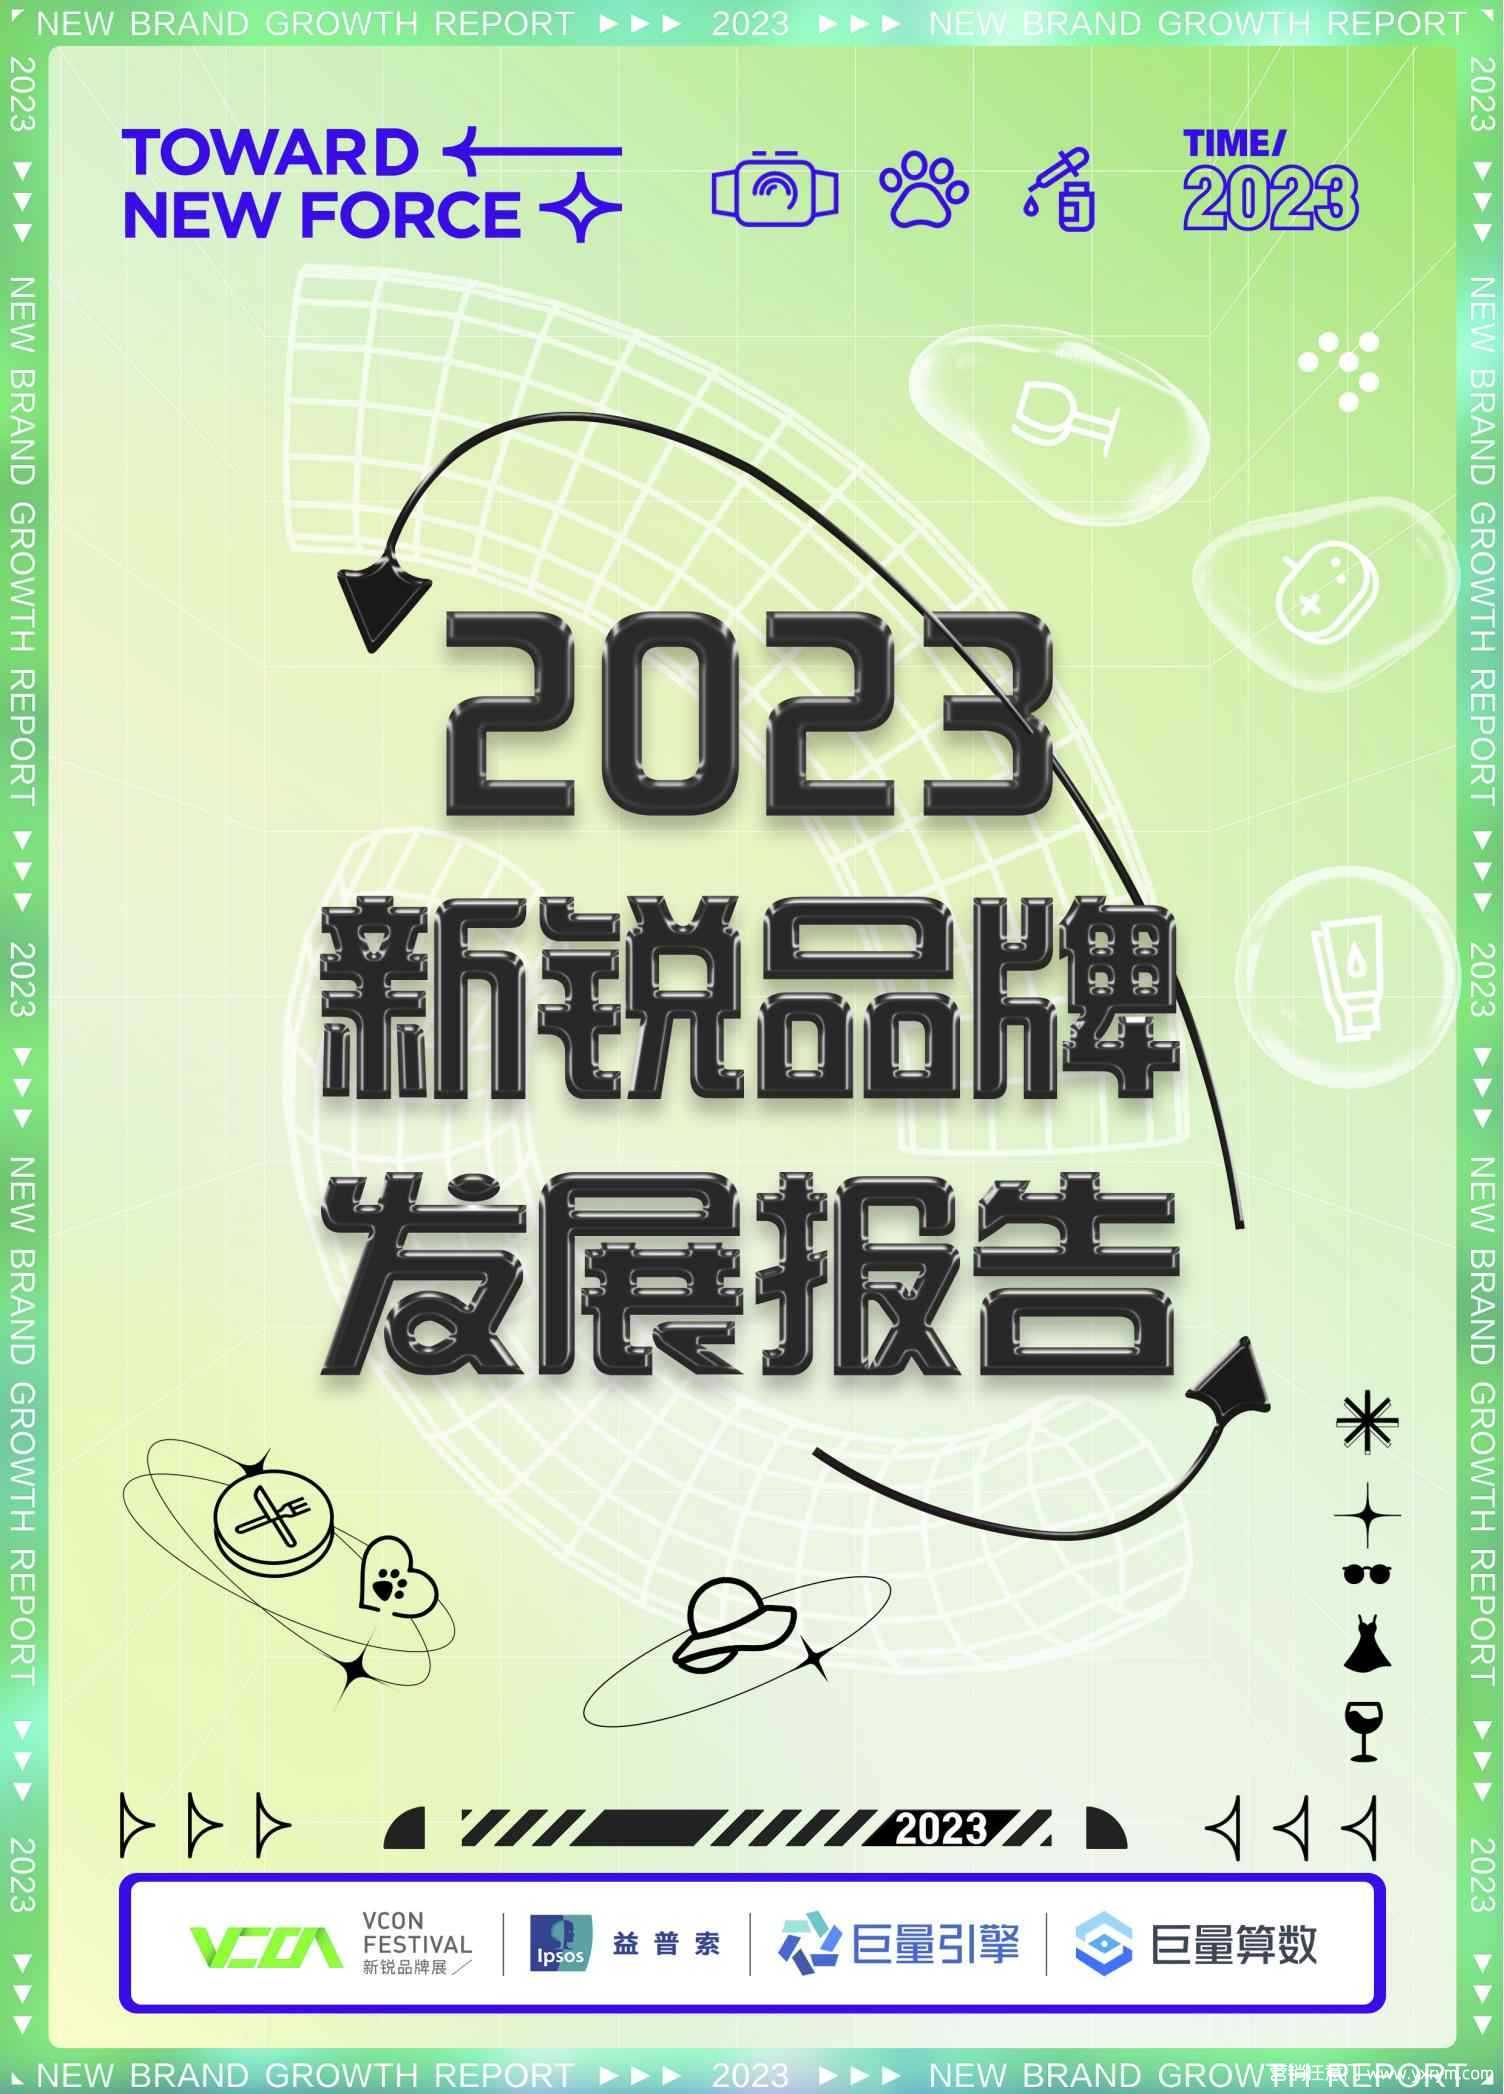 【营销任意门】2023新锐品牌发展报告-巨量引擎&益普索_00